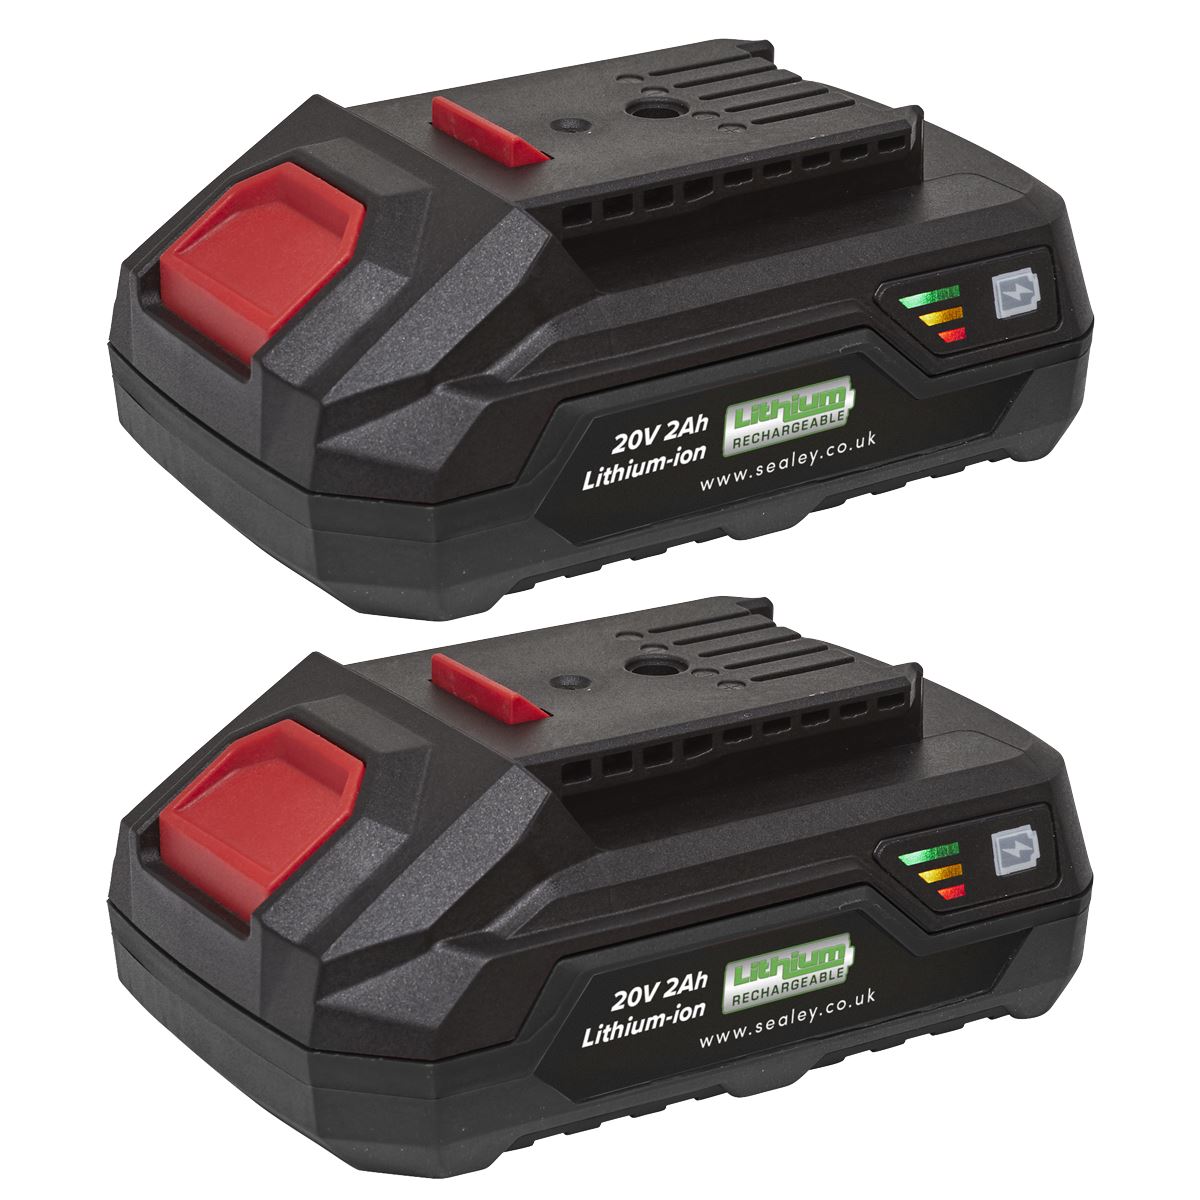 Sealey Power Tool Battery Pack 20V 2Ah Kit for SV20 Series